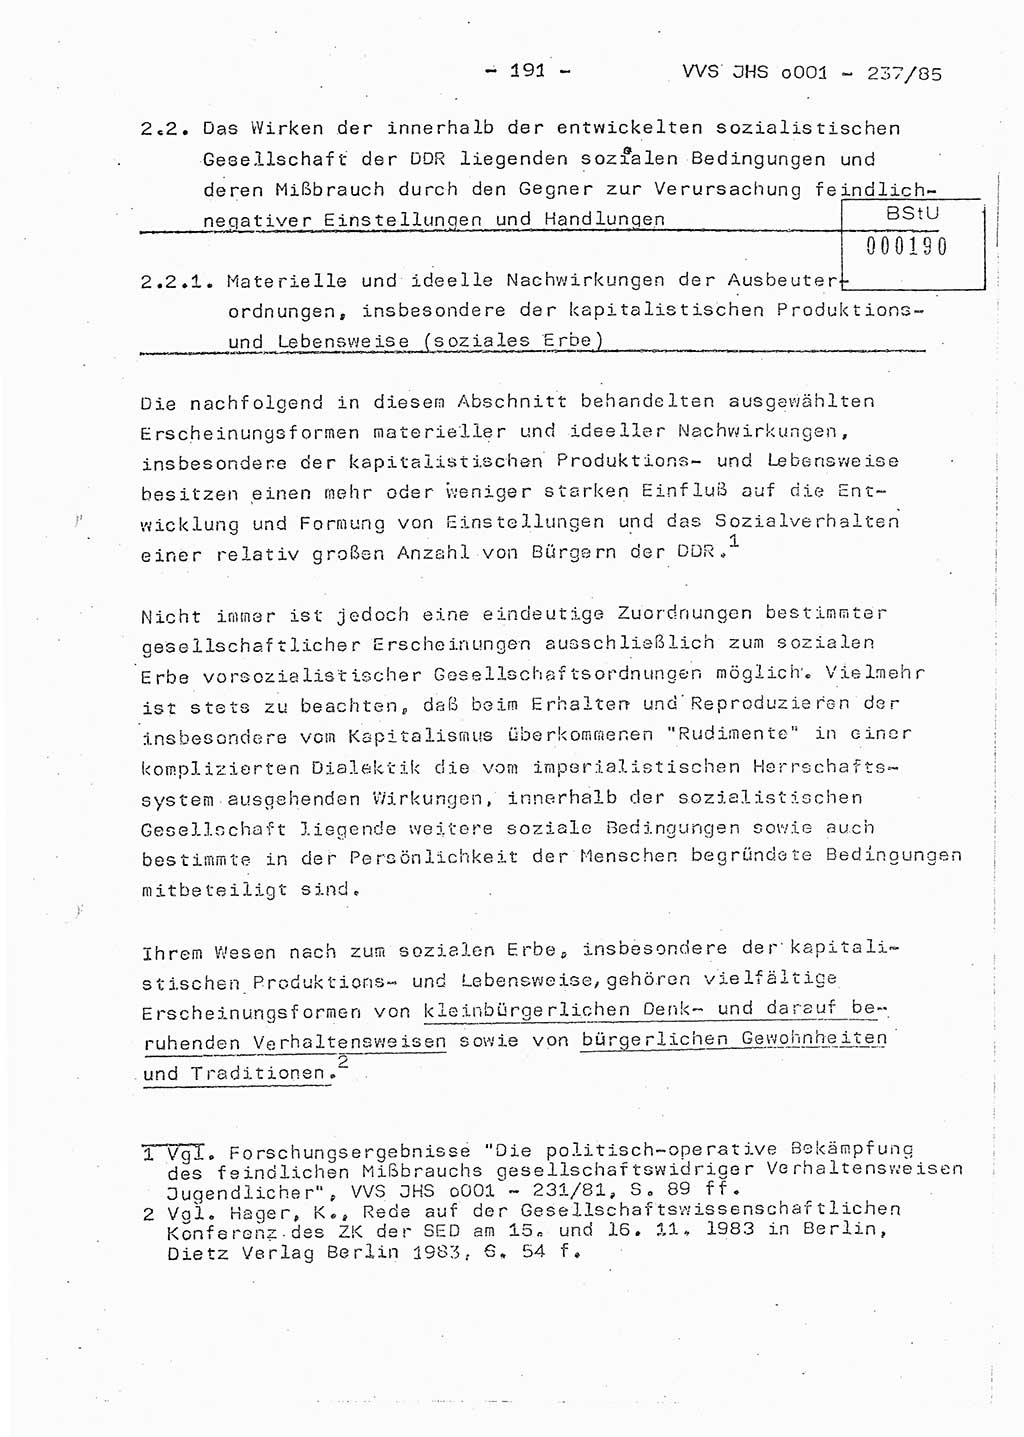 Dissertation Oberstleutnant Peter Jakulski (JHS), Oberstleutnat Christian Rudolph (HA Ⅸ), Major Horst Böttger (ZMD), Major Wolfgang Grüneberg (JHS), Major Albert Meutsch (JHS), Ministerium für Staatssicherheit (MfS) [Deutsche Demokratische Republik (DDR)], Juristische Hochschule (JHS), Vertrauliche Verschlußsache (VVS) o001-237/85, Potsdam 1985, Seite 191 (Diss. MfS DDR JHS VVS o001-237/85 1985, S. 191)